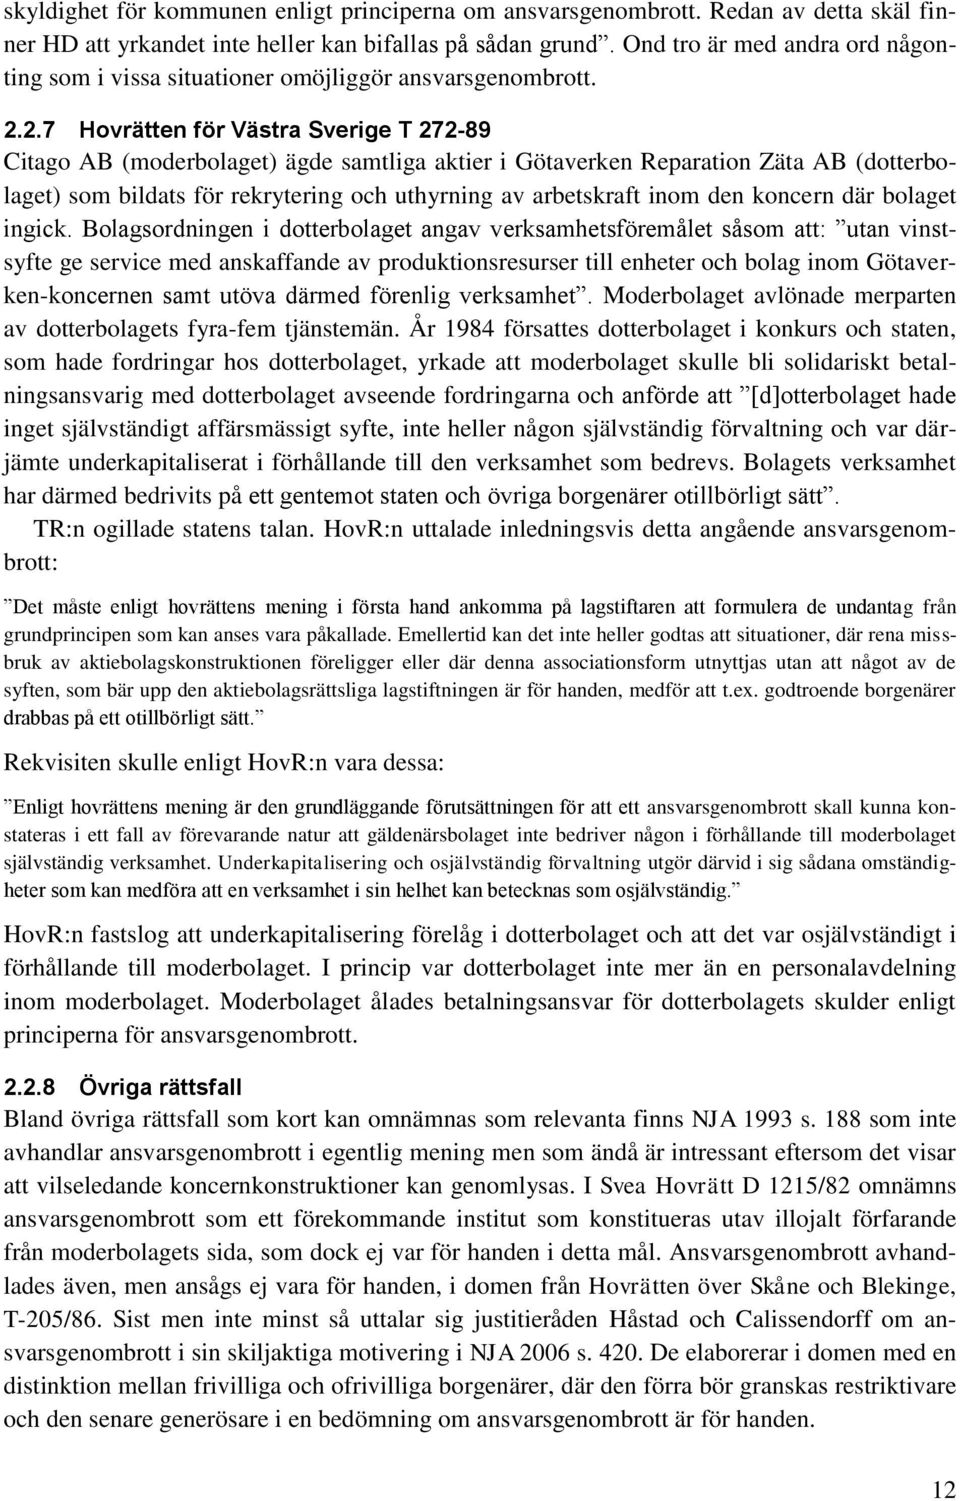 2.7 Hovrätten för Västra Sverige T 272-89 Citago AB (moderbolaget) ägde samtliga aktier i Götaverken Reparation Zäta AB (dotterbolaget) som bildats för rekrytering och uthyrning av arbetskraft inom